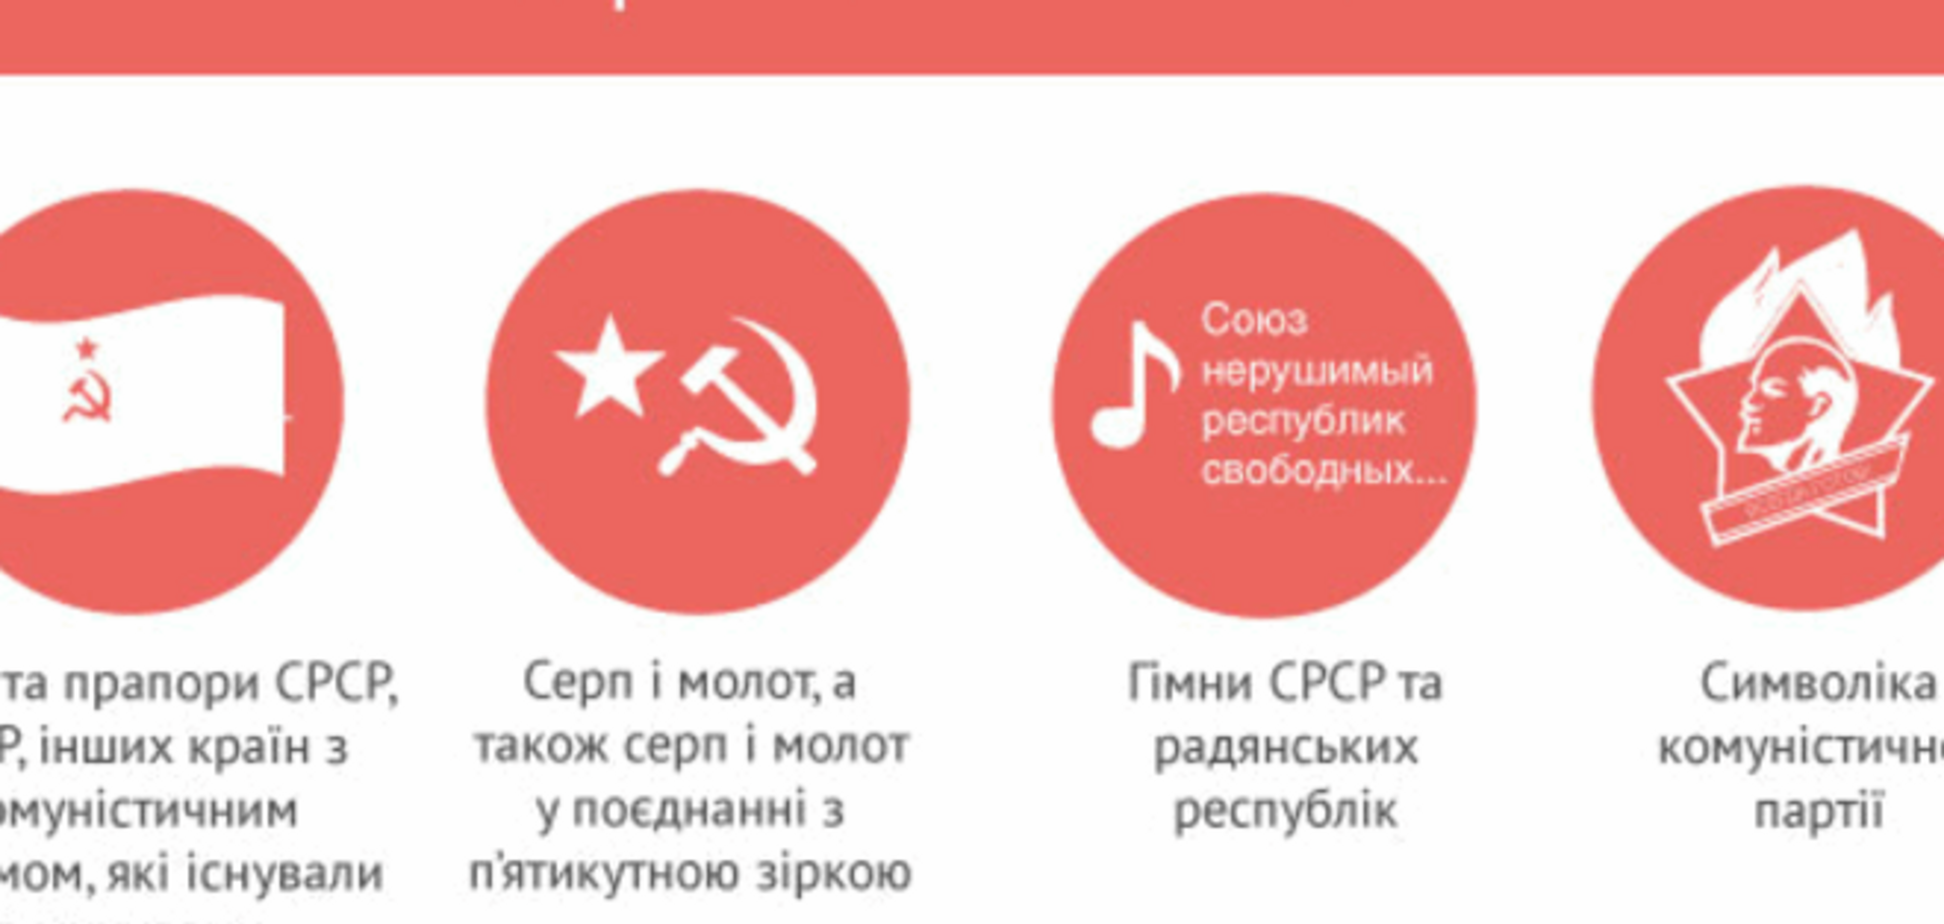 Какая советская символика запрещена и разрешена в Украине: инфографика